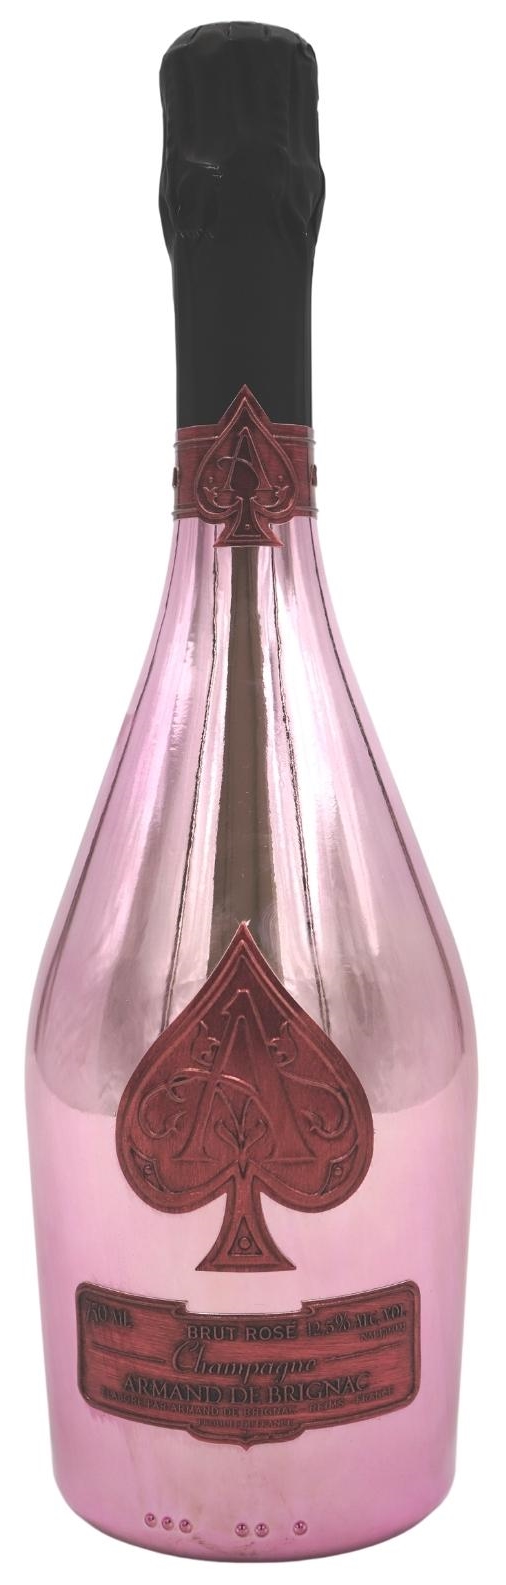 Champagner Armand de Brignac Brut Rosé